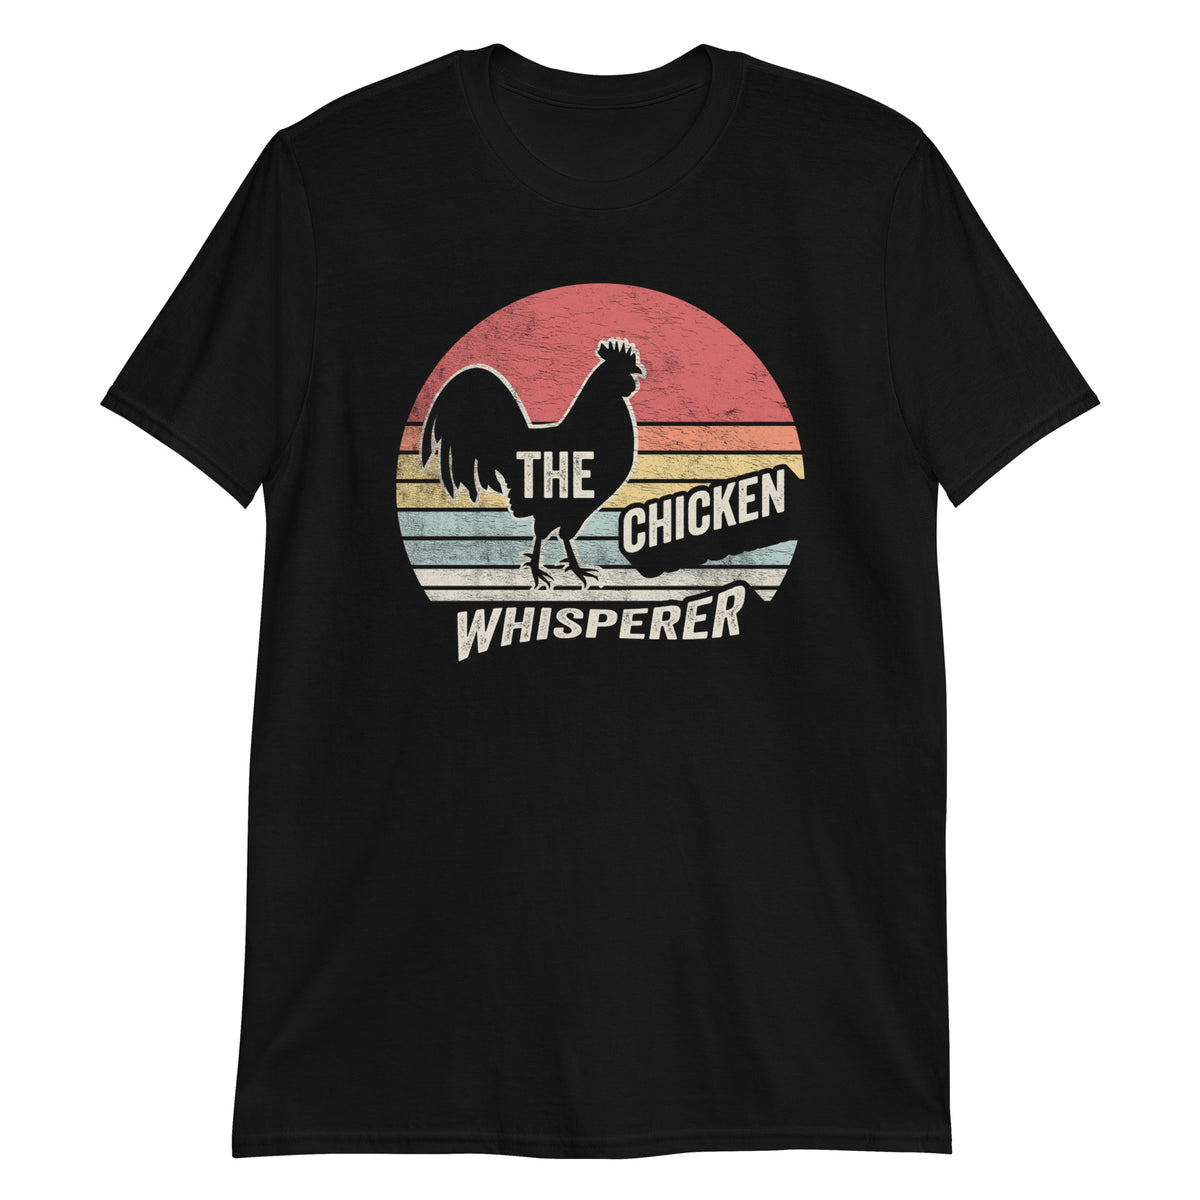 The Chicken Whisperer T-Shirt